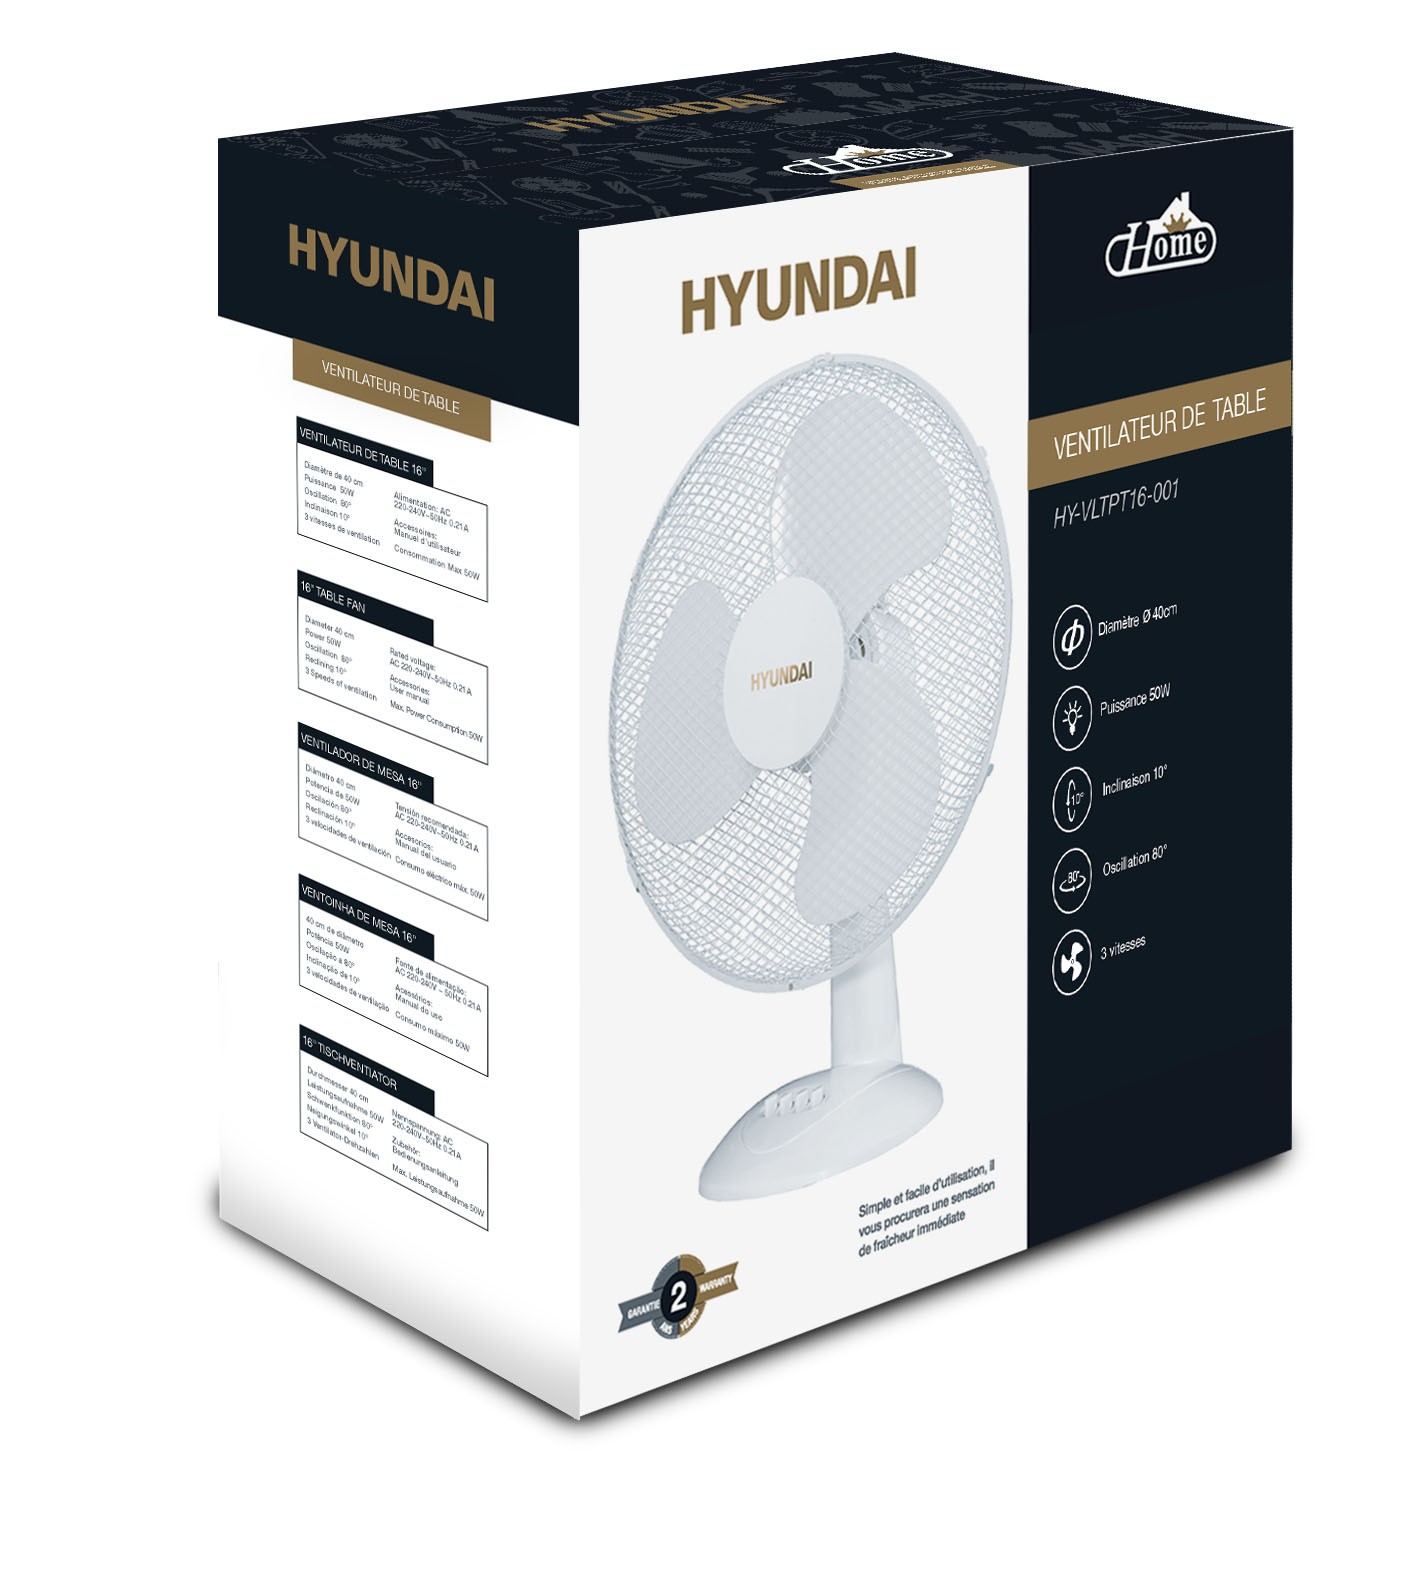 Ventilateur de table HYUNDAI HY-VLTPT16-001 16 50 W